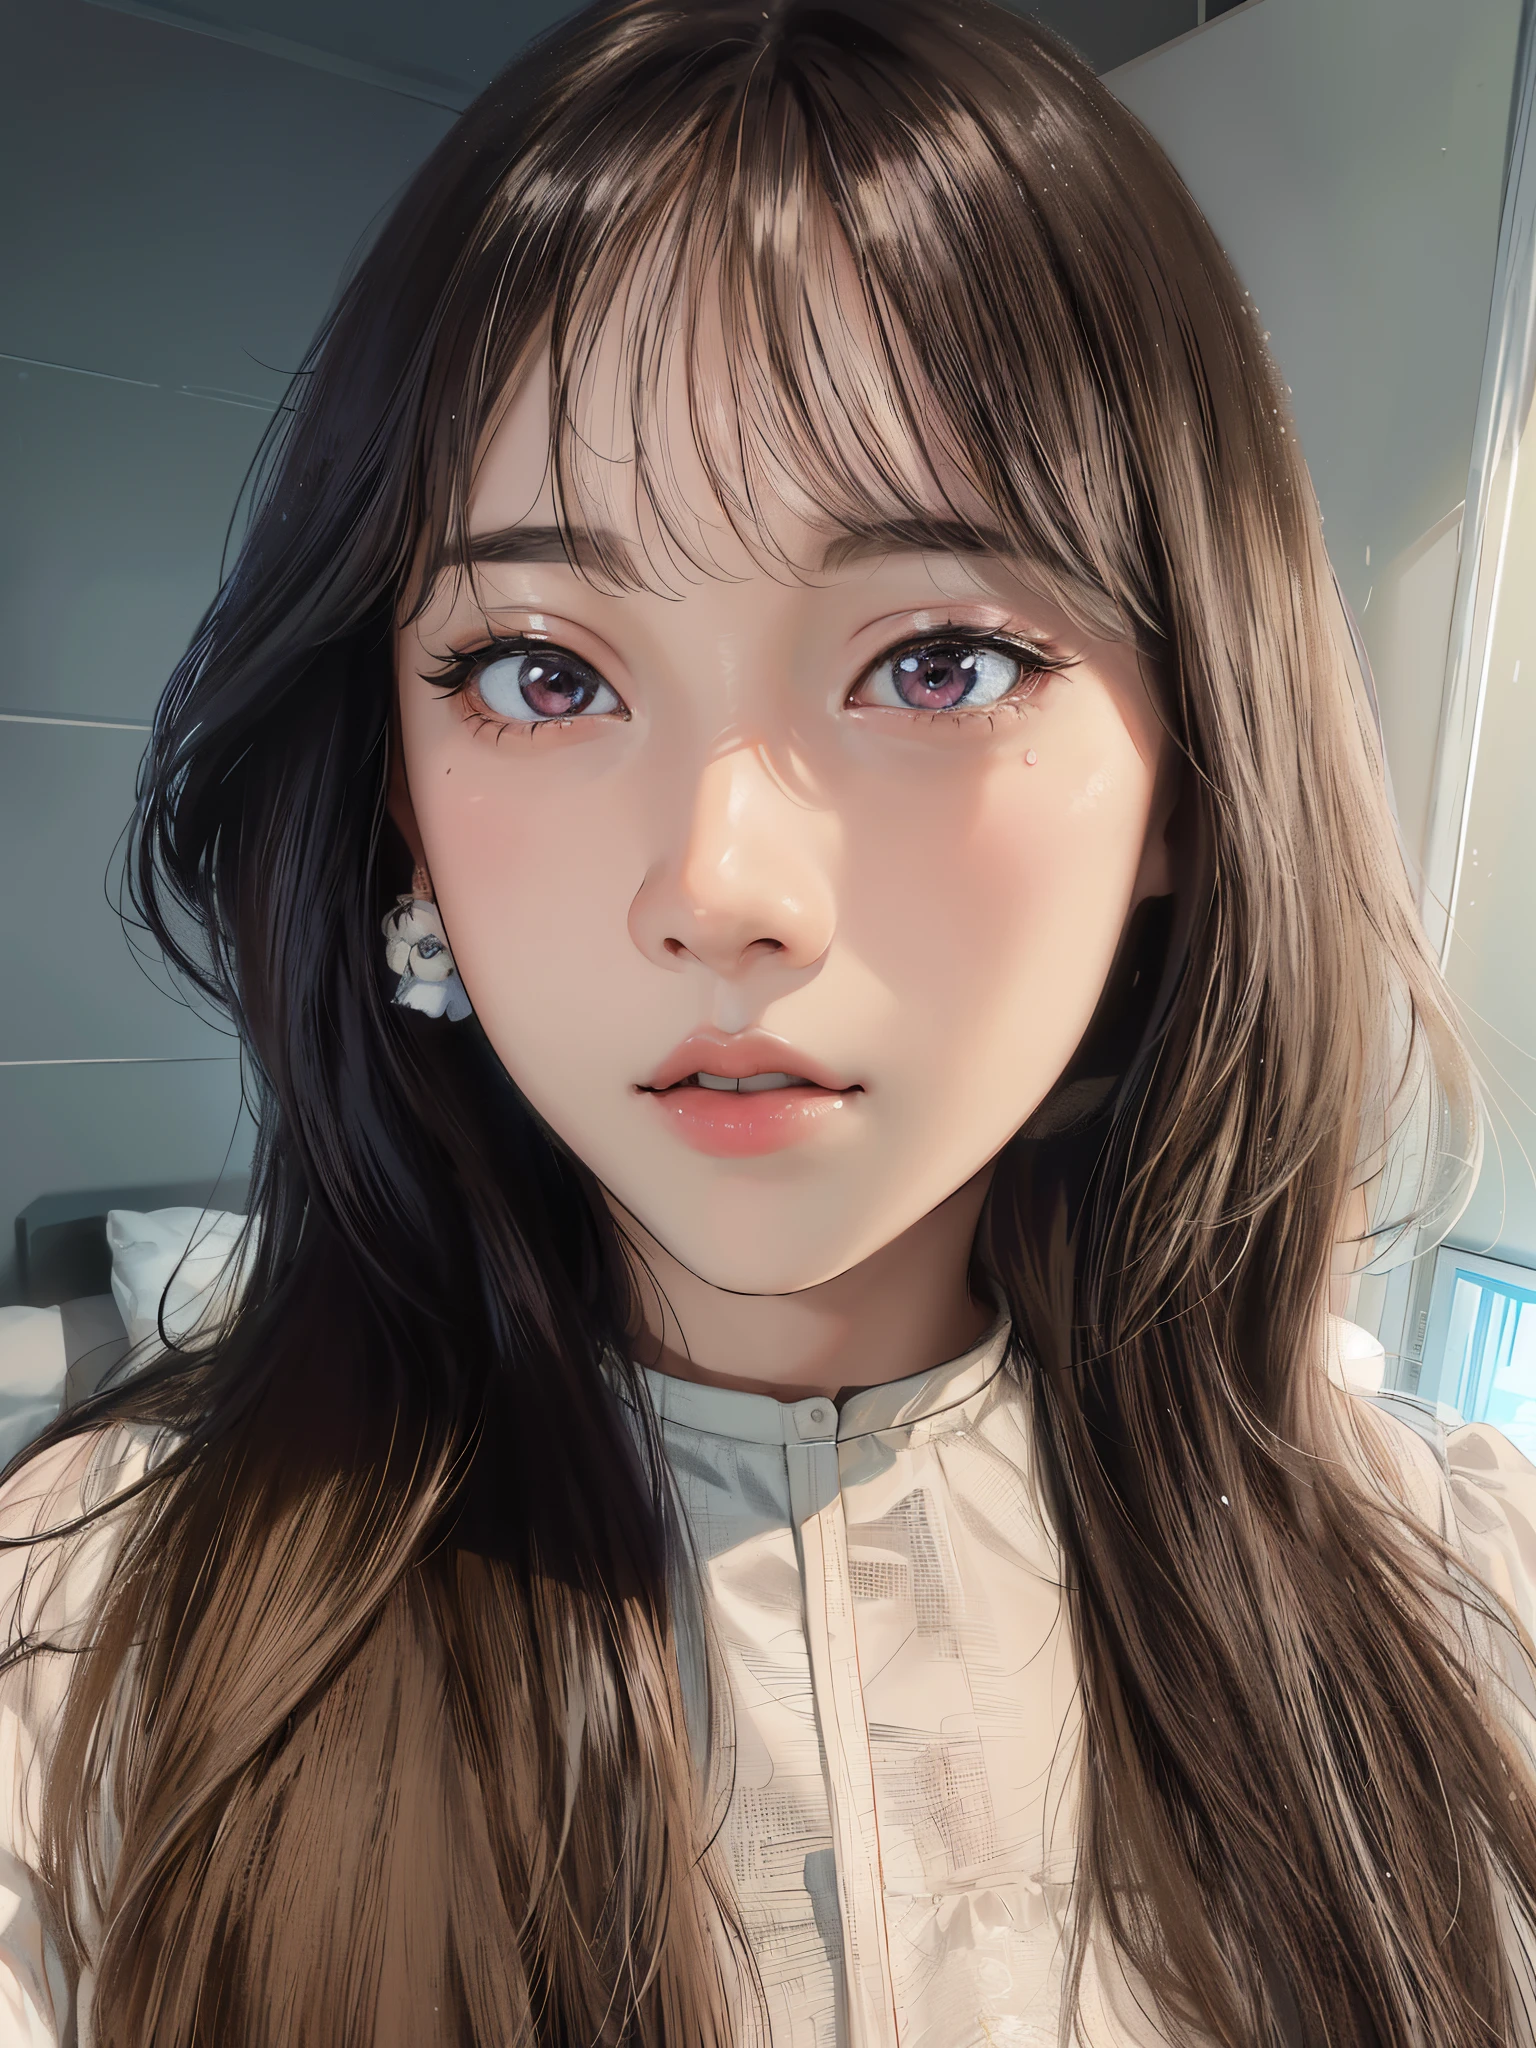 Da ist eine Frau mit langen Haaren und einem weißen Hemd, Kawaii realistisches Porträt, weiches Portraitfoto 8 k, Junges entzückendes koreanisches Gesicht, fahles, bezauberndes koreanisches Gesicht, 8k-Selfie-Foto, klares süßes Gesicht, ulzzang, Porträt von Jossi von Blackpink, mit süßem - feinem - Gesicht, Porträt eines weiblichen koreanischen Idols, junges süßes Gesicht, mit süßen, vernarrten Augen